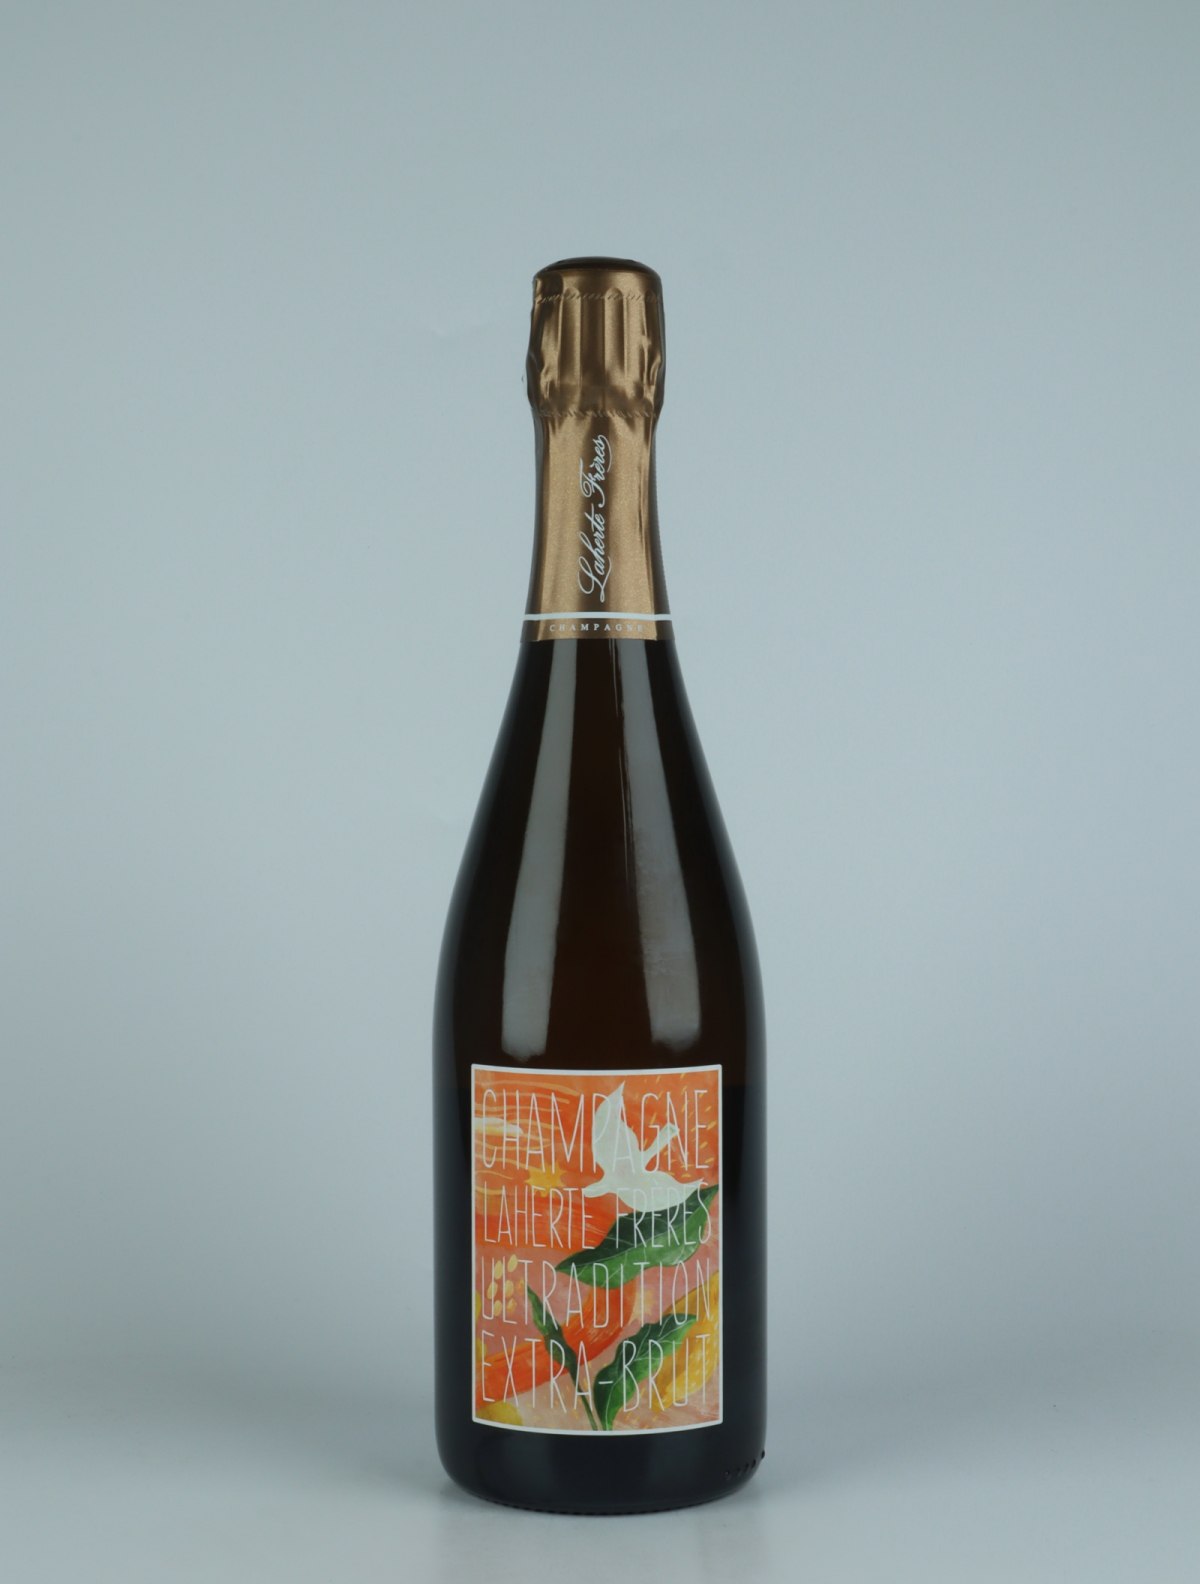 En flaske N.V. Ultradition - Extra Brut Mousserende fra Laherte Frères, Champagne i Frankrig